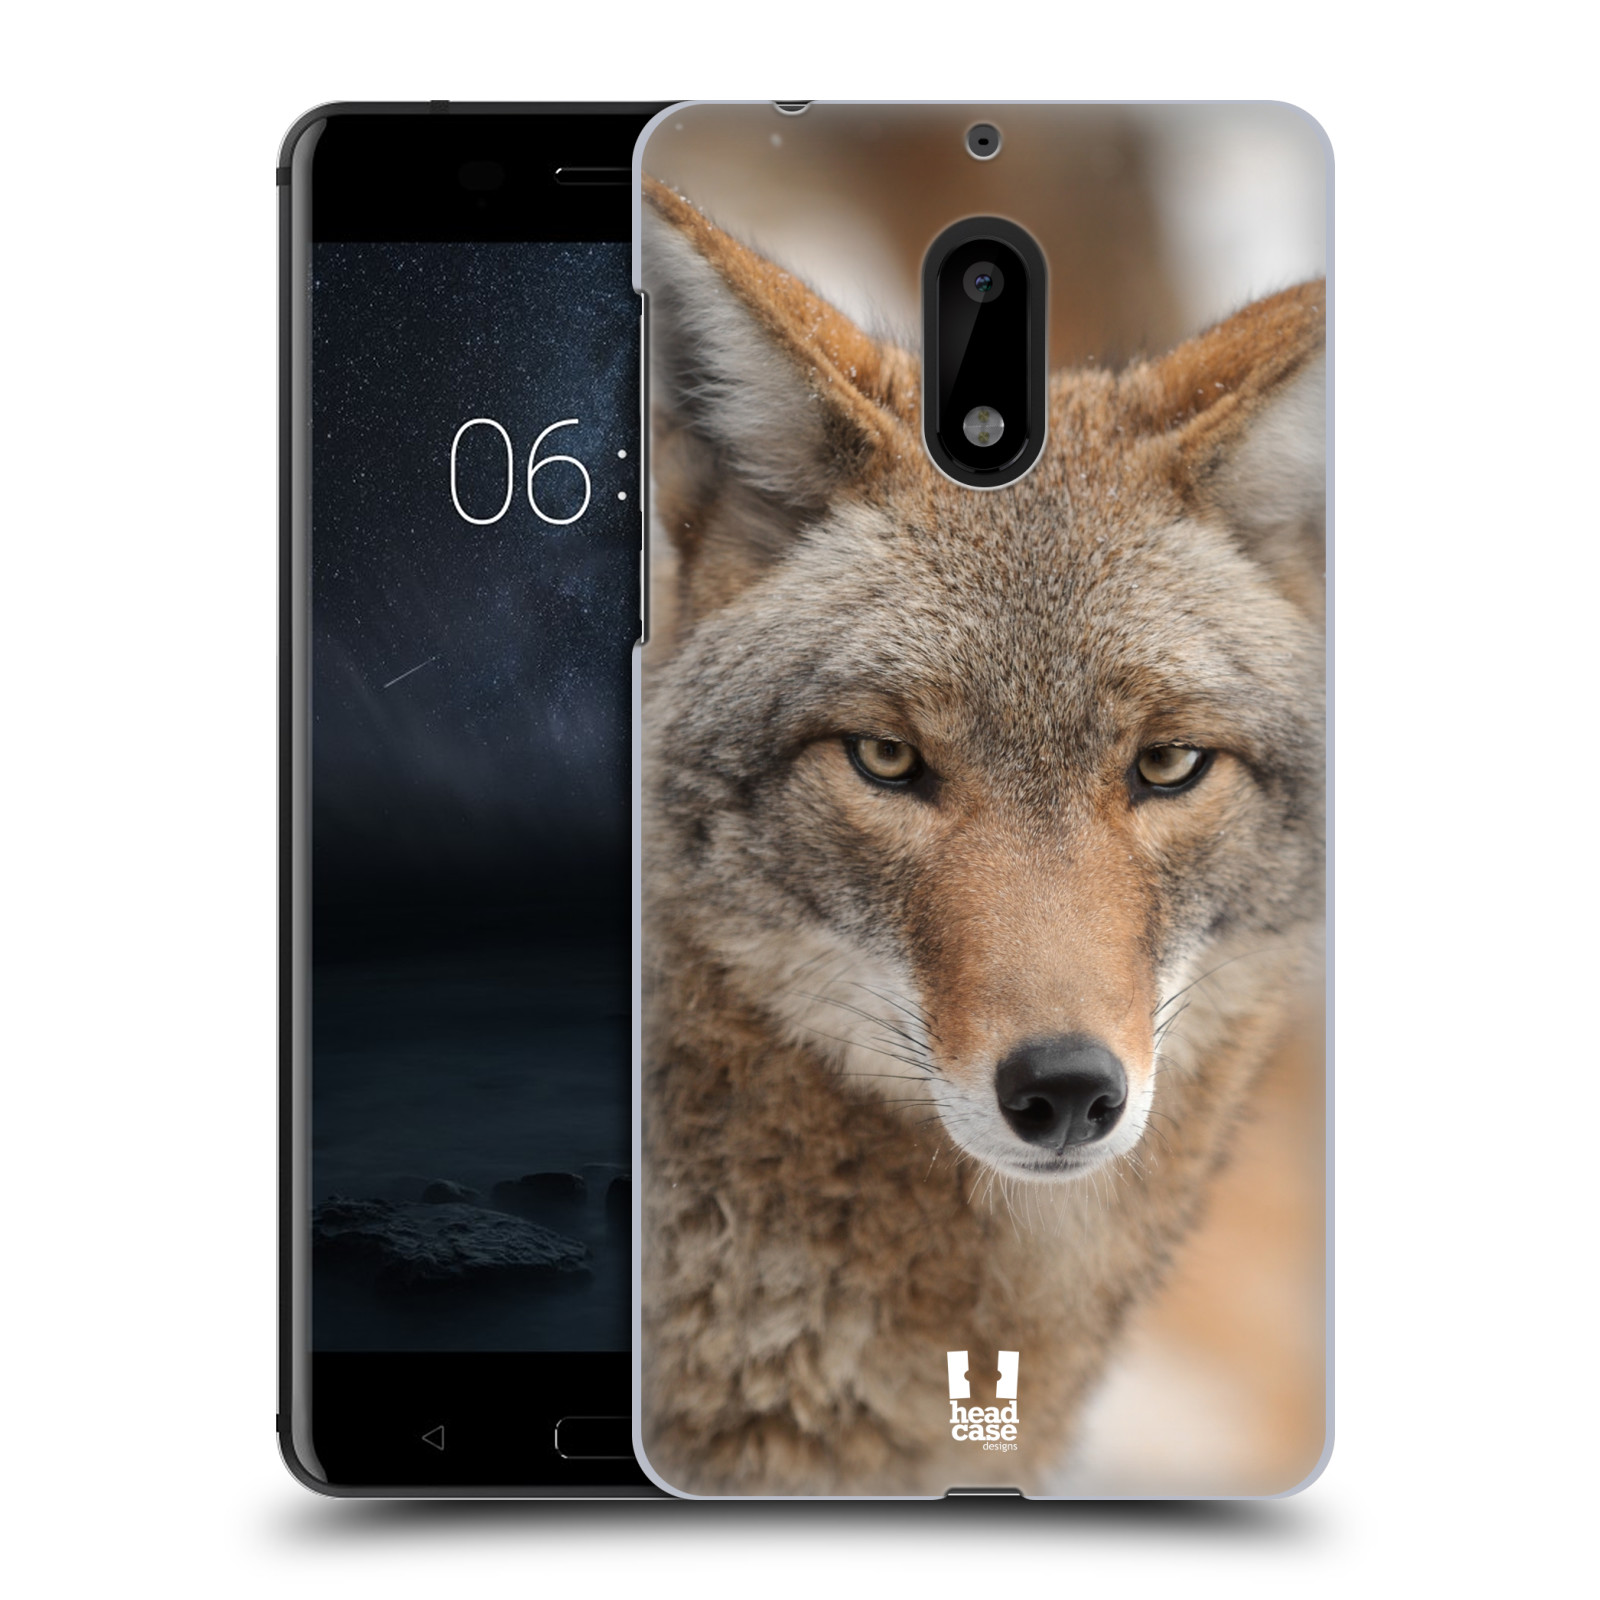 HEAD CASE plastový obal na mobil Nokia 6 vzor slavná zvířata foto kojot